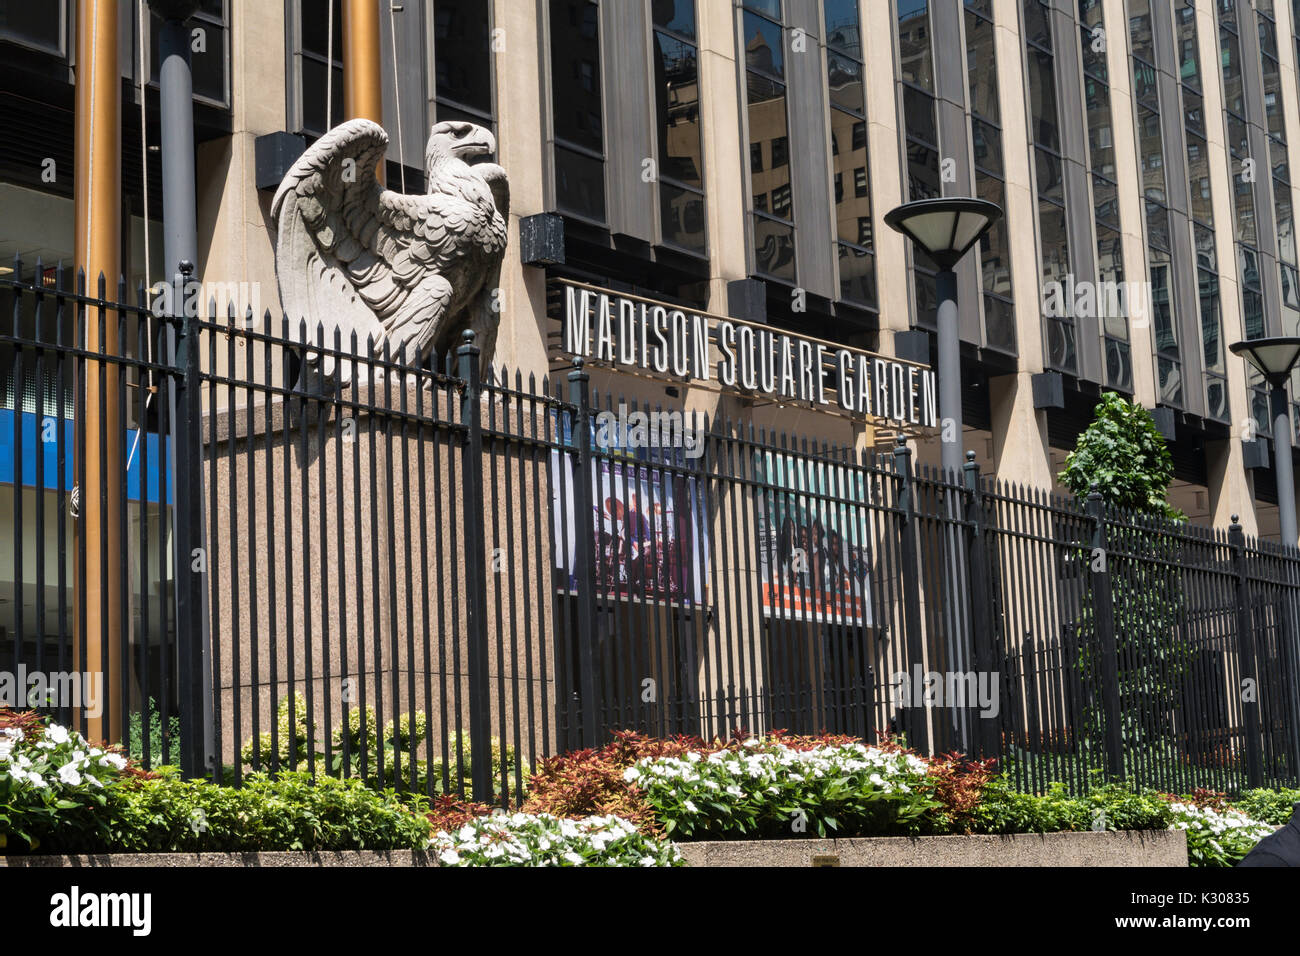 La sculpture de l'aigle orne l'entrée du Madison square garden, NYC, usa Banque D'Images